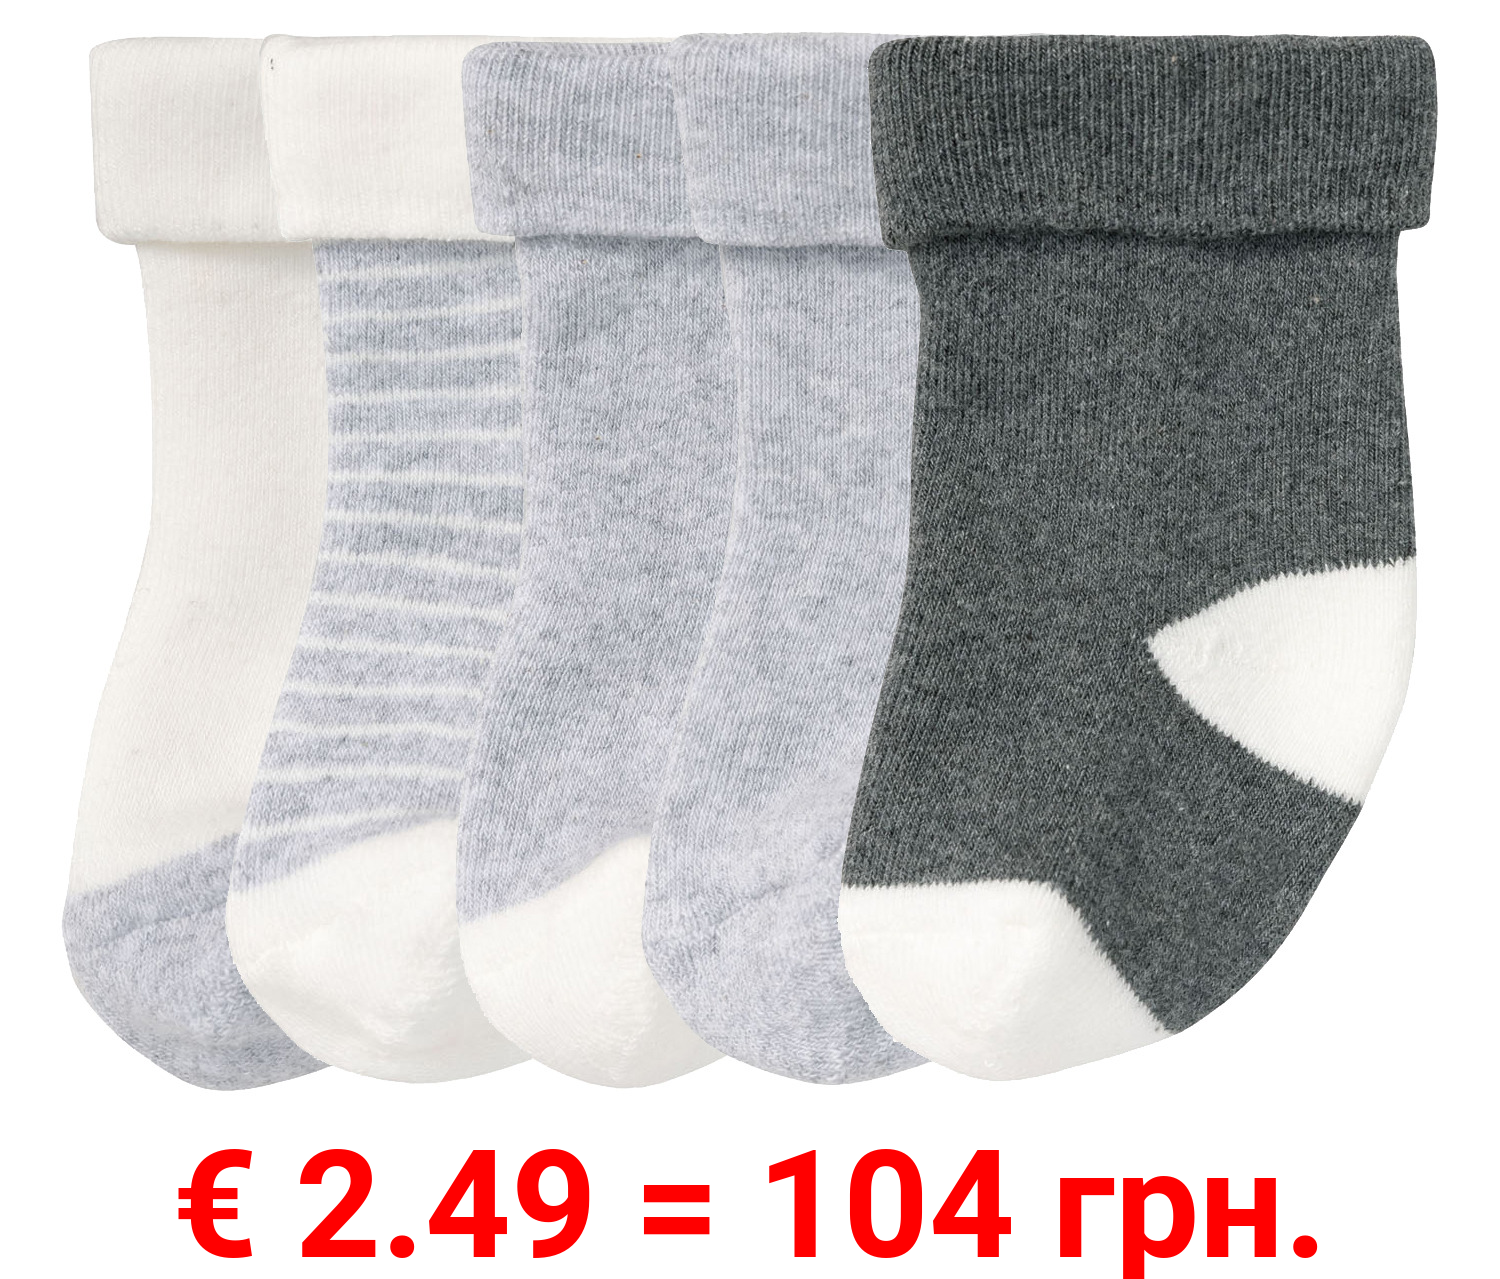 lupilu® Baby Thermo-Socken, 5 Paar, mit hohem Baumwollanteil, weiß/grau